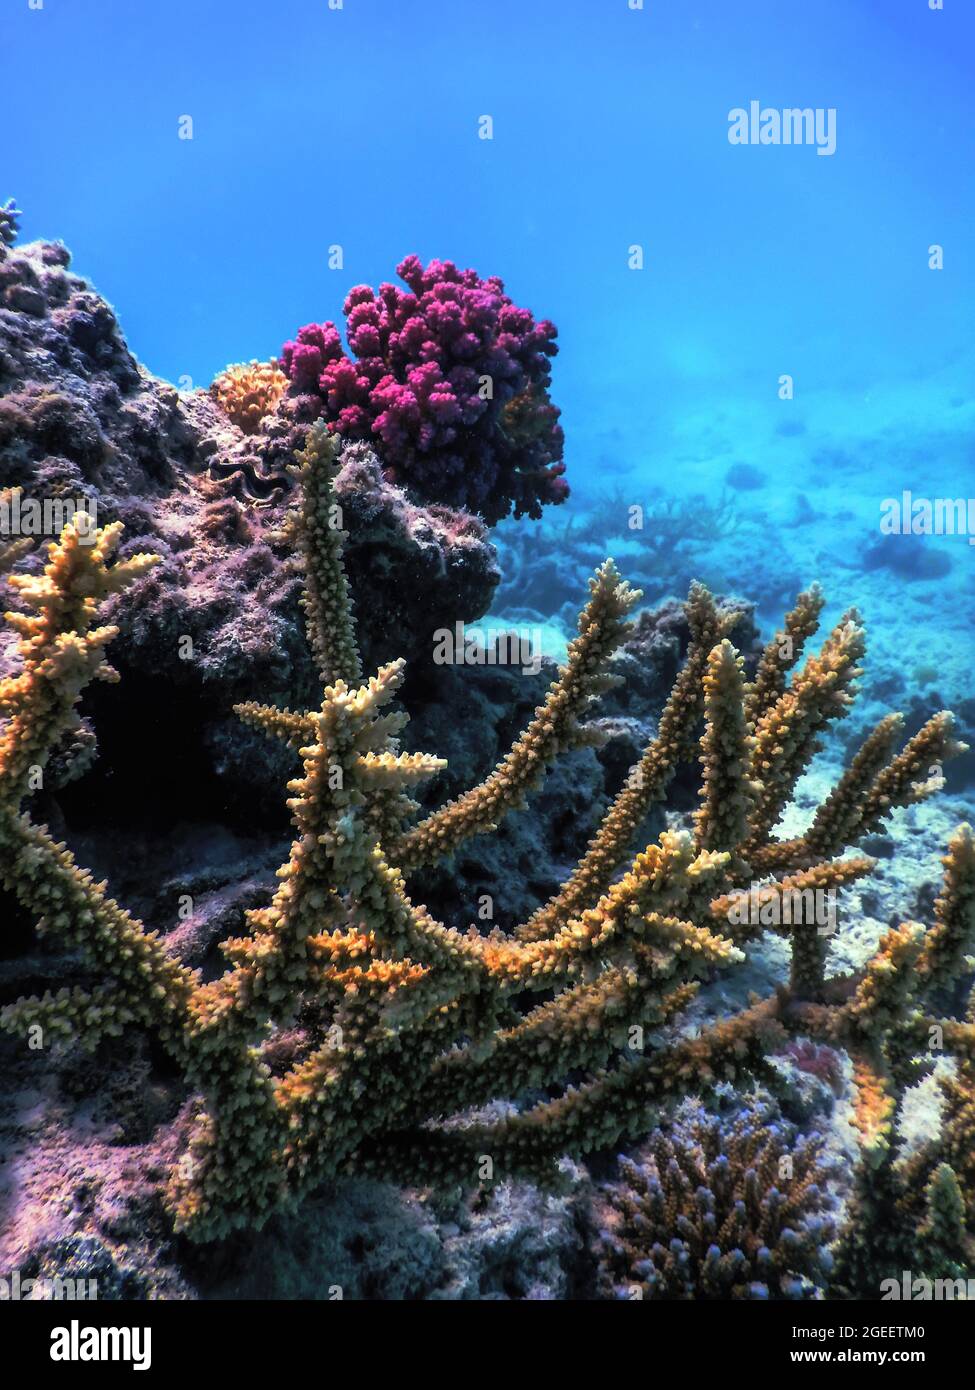 Corail staghorn (Acropora cervicornis) eaux tropicales, vie marine Banque D'Images